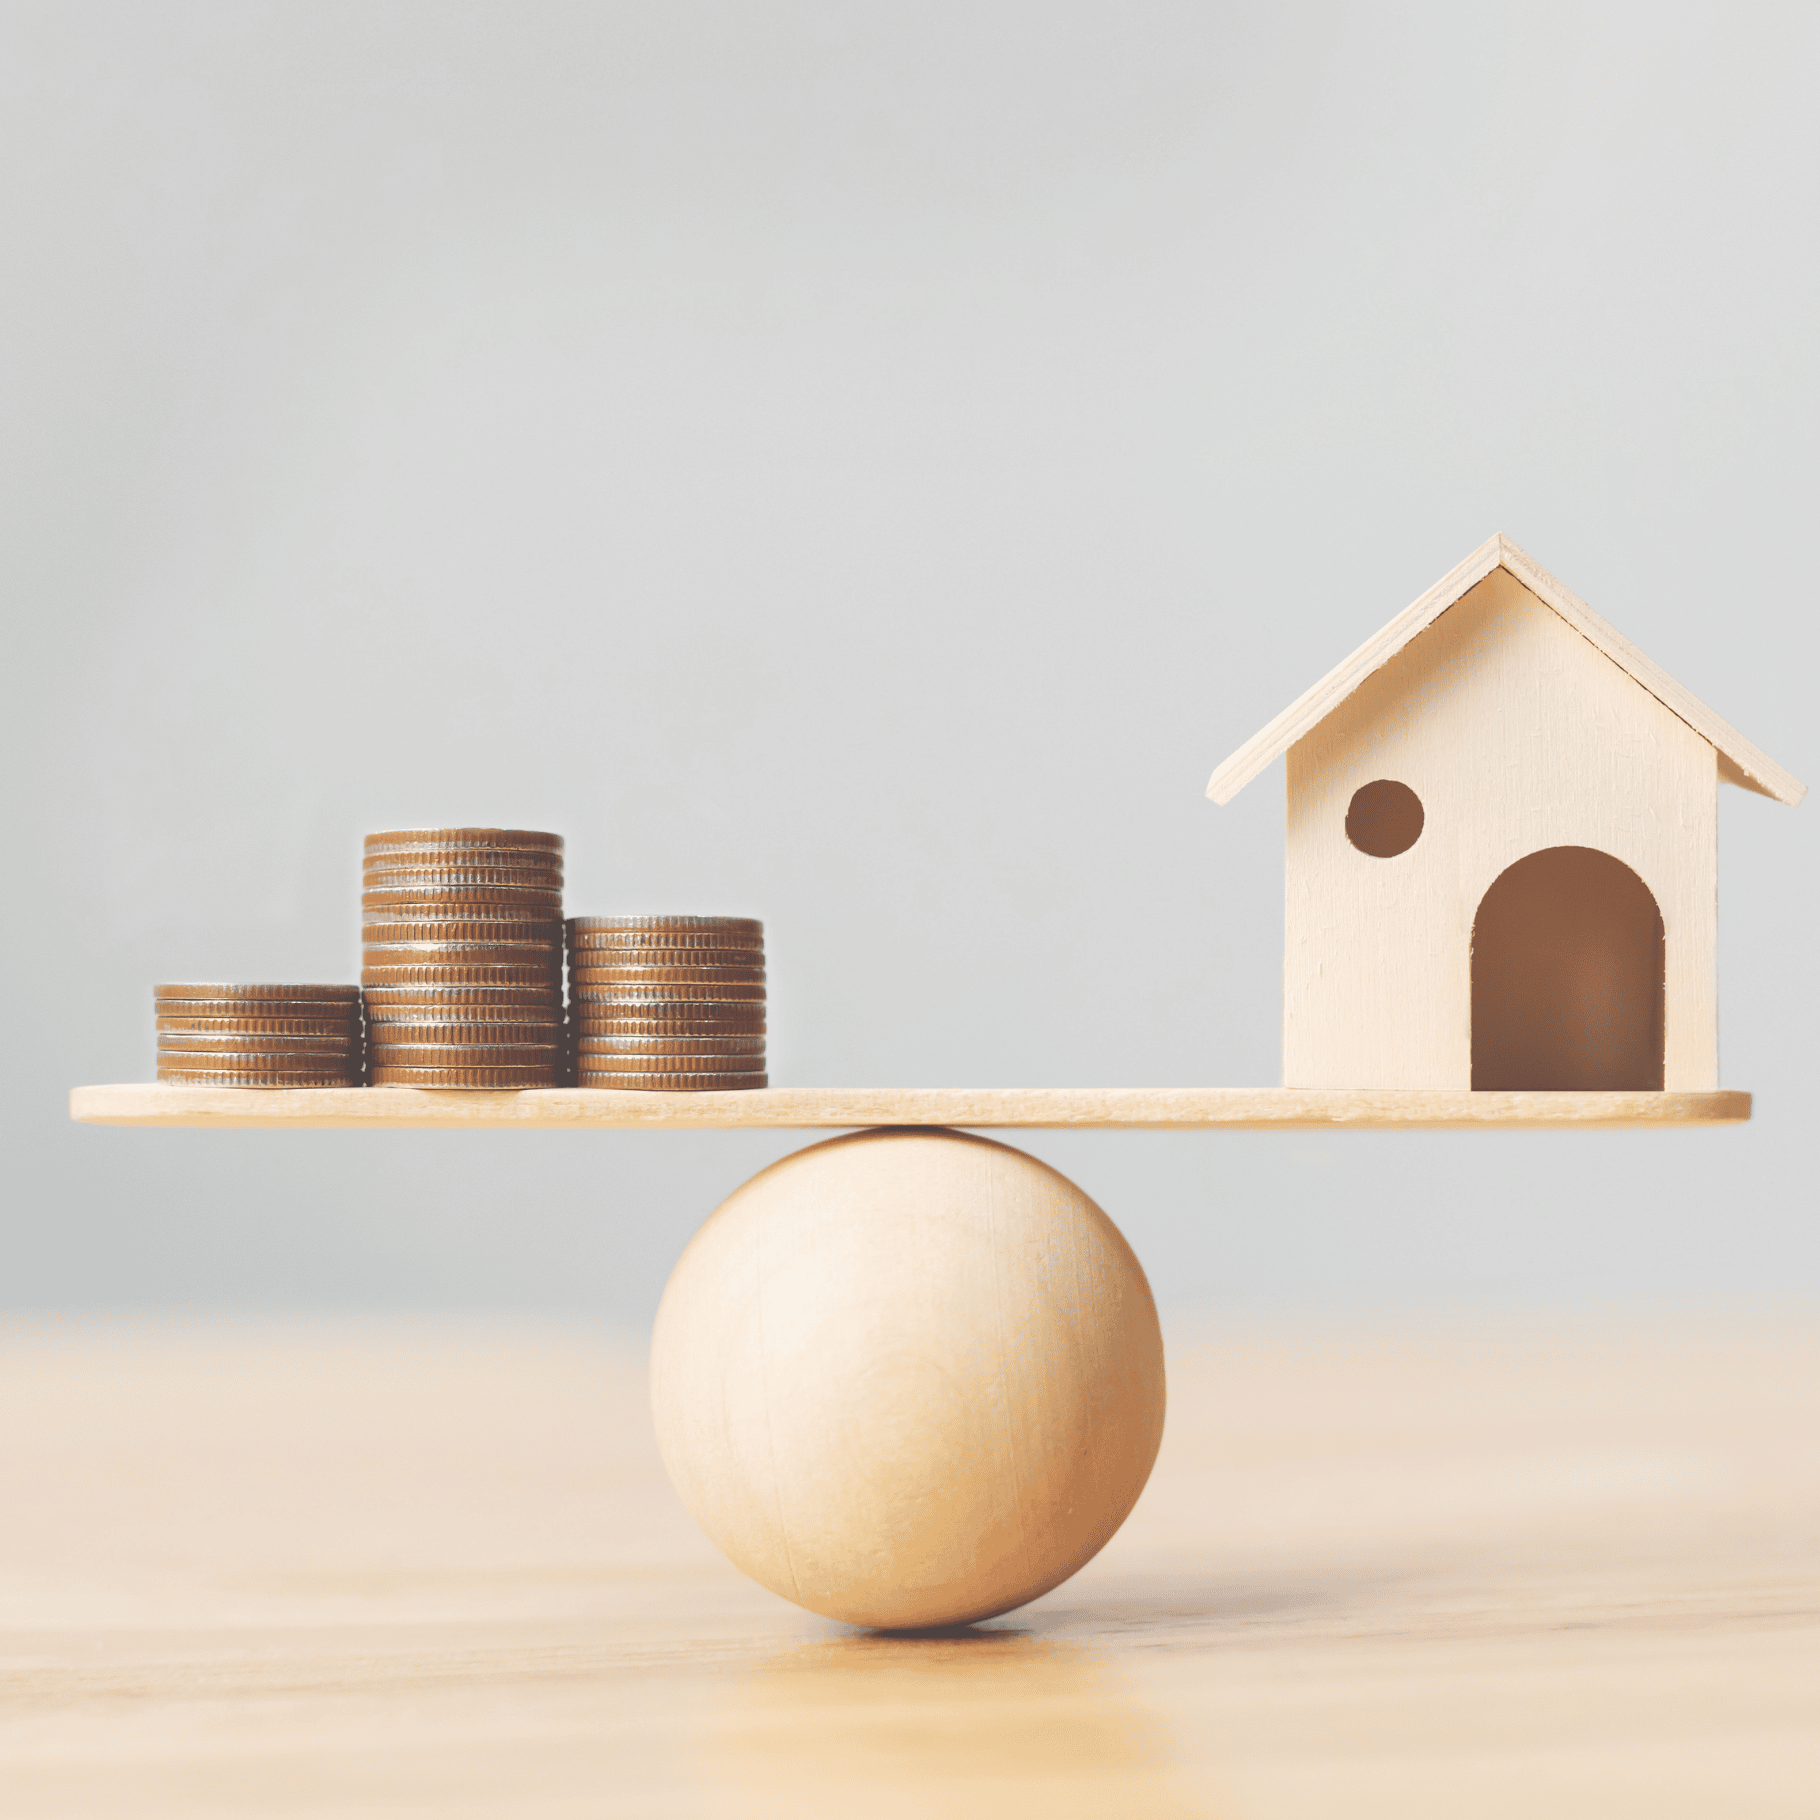 Comparateur assurance emprunteur prêt immobilier